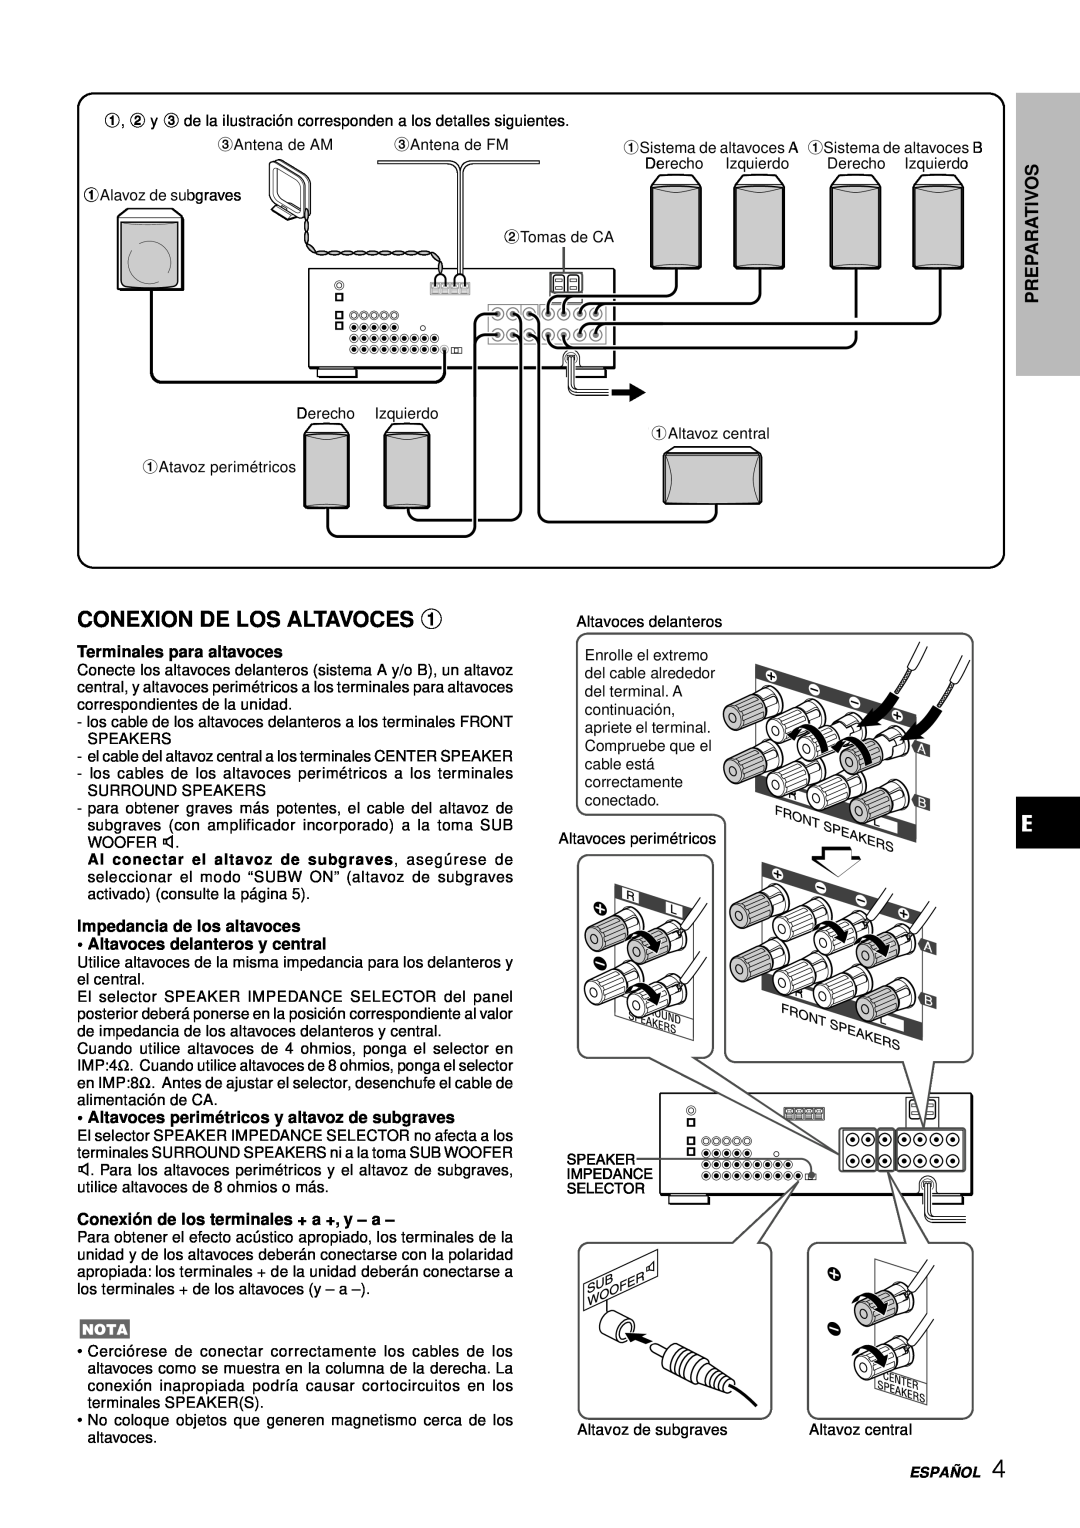 Aiwa AV-D97 Conexion De Los Altavoces, Terminales para altavoces, Altavoces perimé tricos y altavoz de subgraves, Españ Ol 